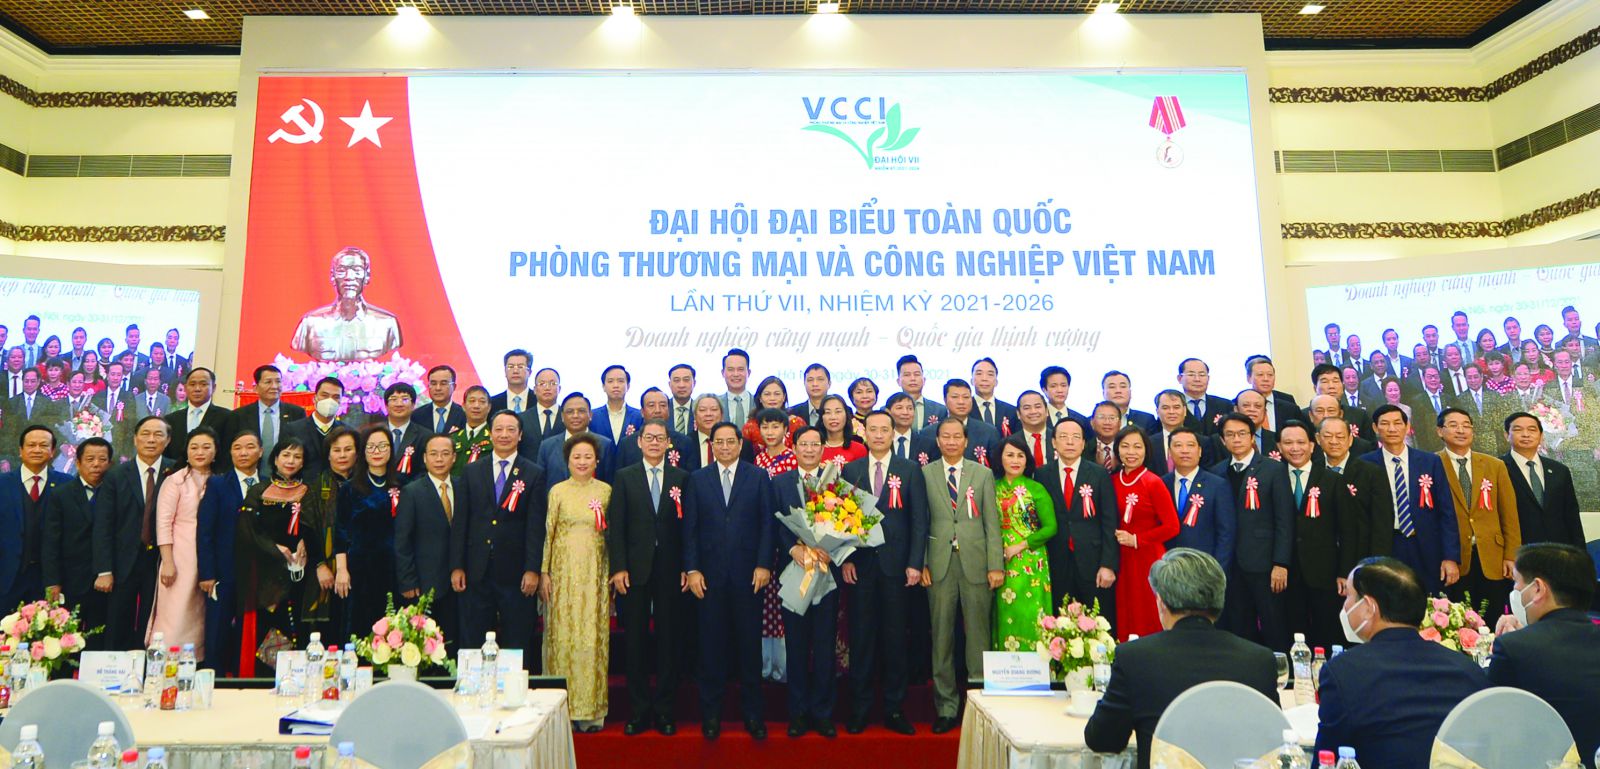 Thủ tướng Chính phủ Phạm Minh Chính cùng Ban chấp hành VCCI tại Đại hội Đại biểu toàn quốc VCCI lần thứ VII.